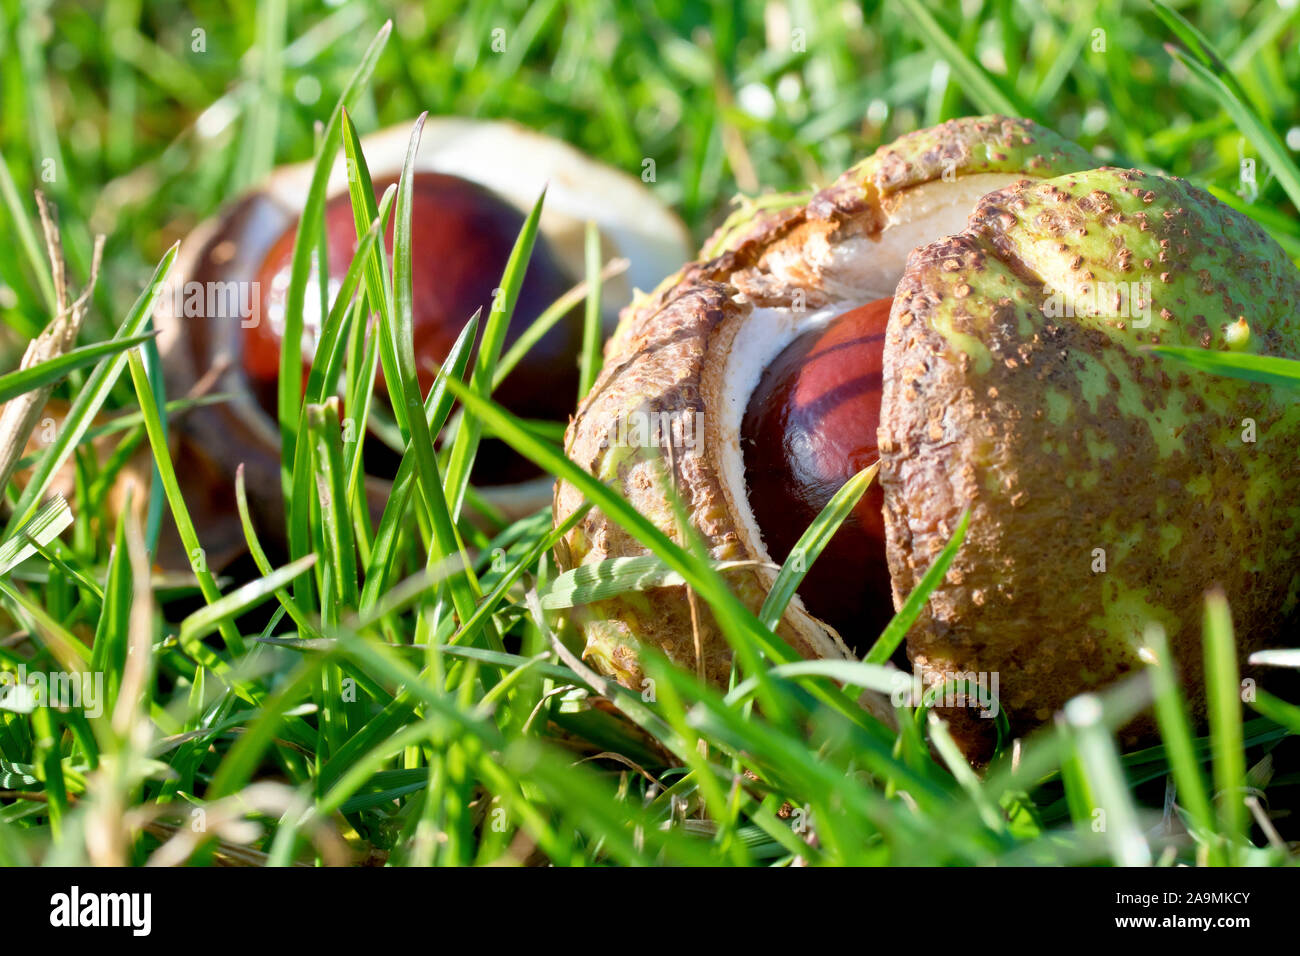 Ippocastani o Conkers (Aesculus hippocastaneum), chiudere fino che mostra un conker ancora nel suo caso sdraiati sull'erba. Foto Stock